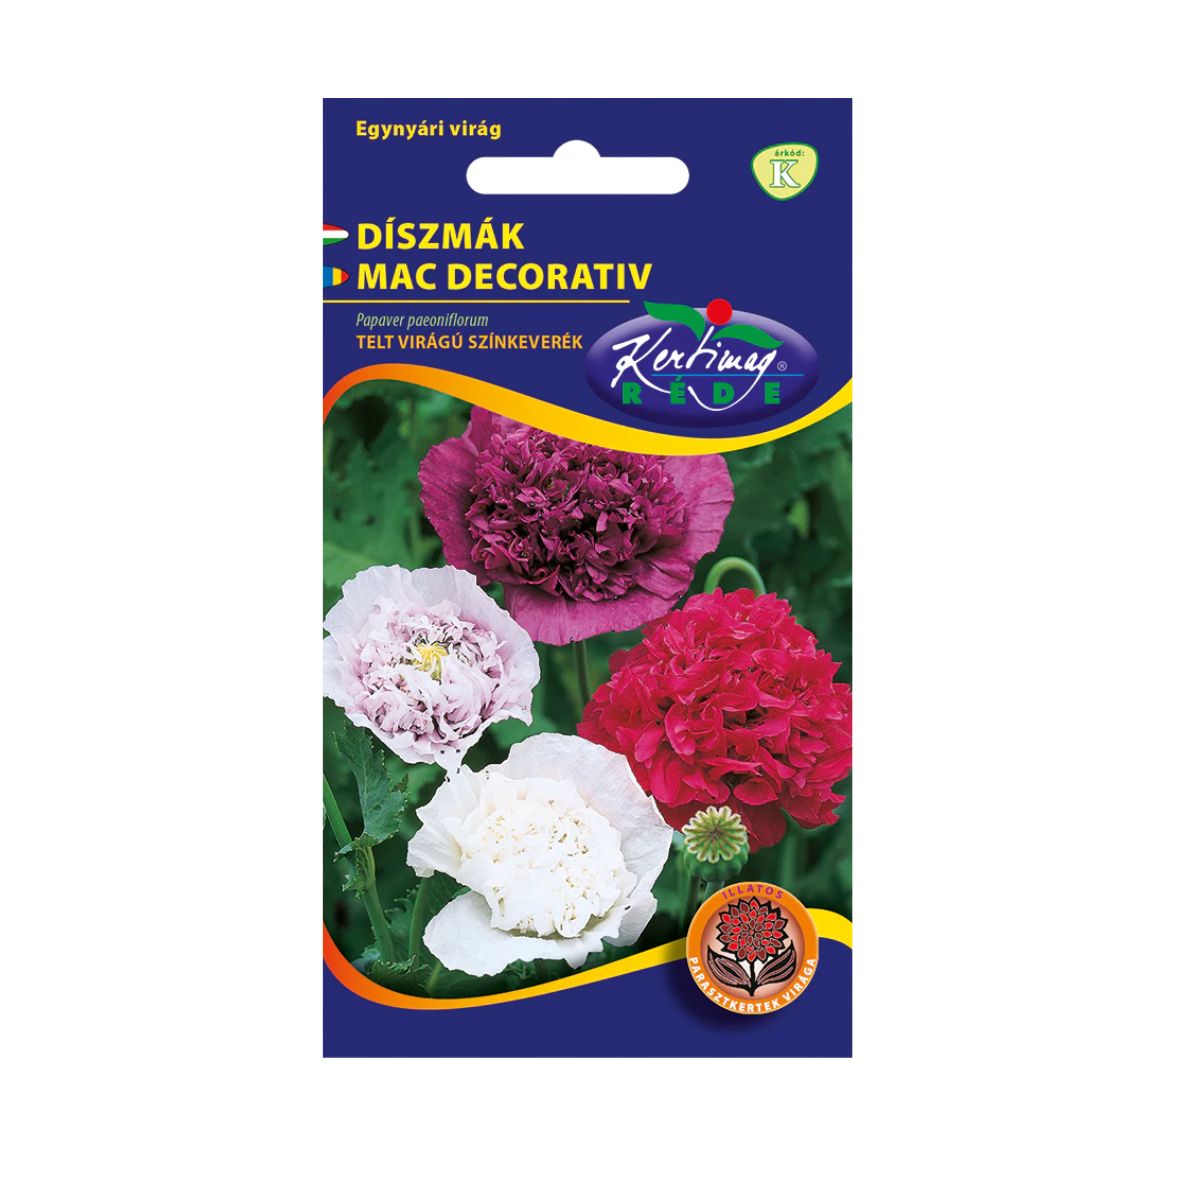 Seminte flori - Seminte de mac decorativ MIX, 1 gr, KERTIMAG, hectarul.ro